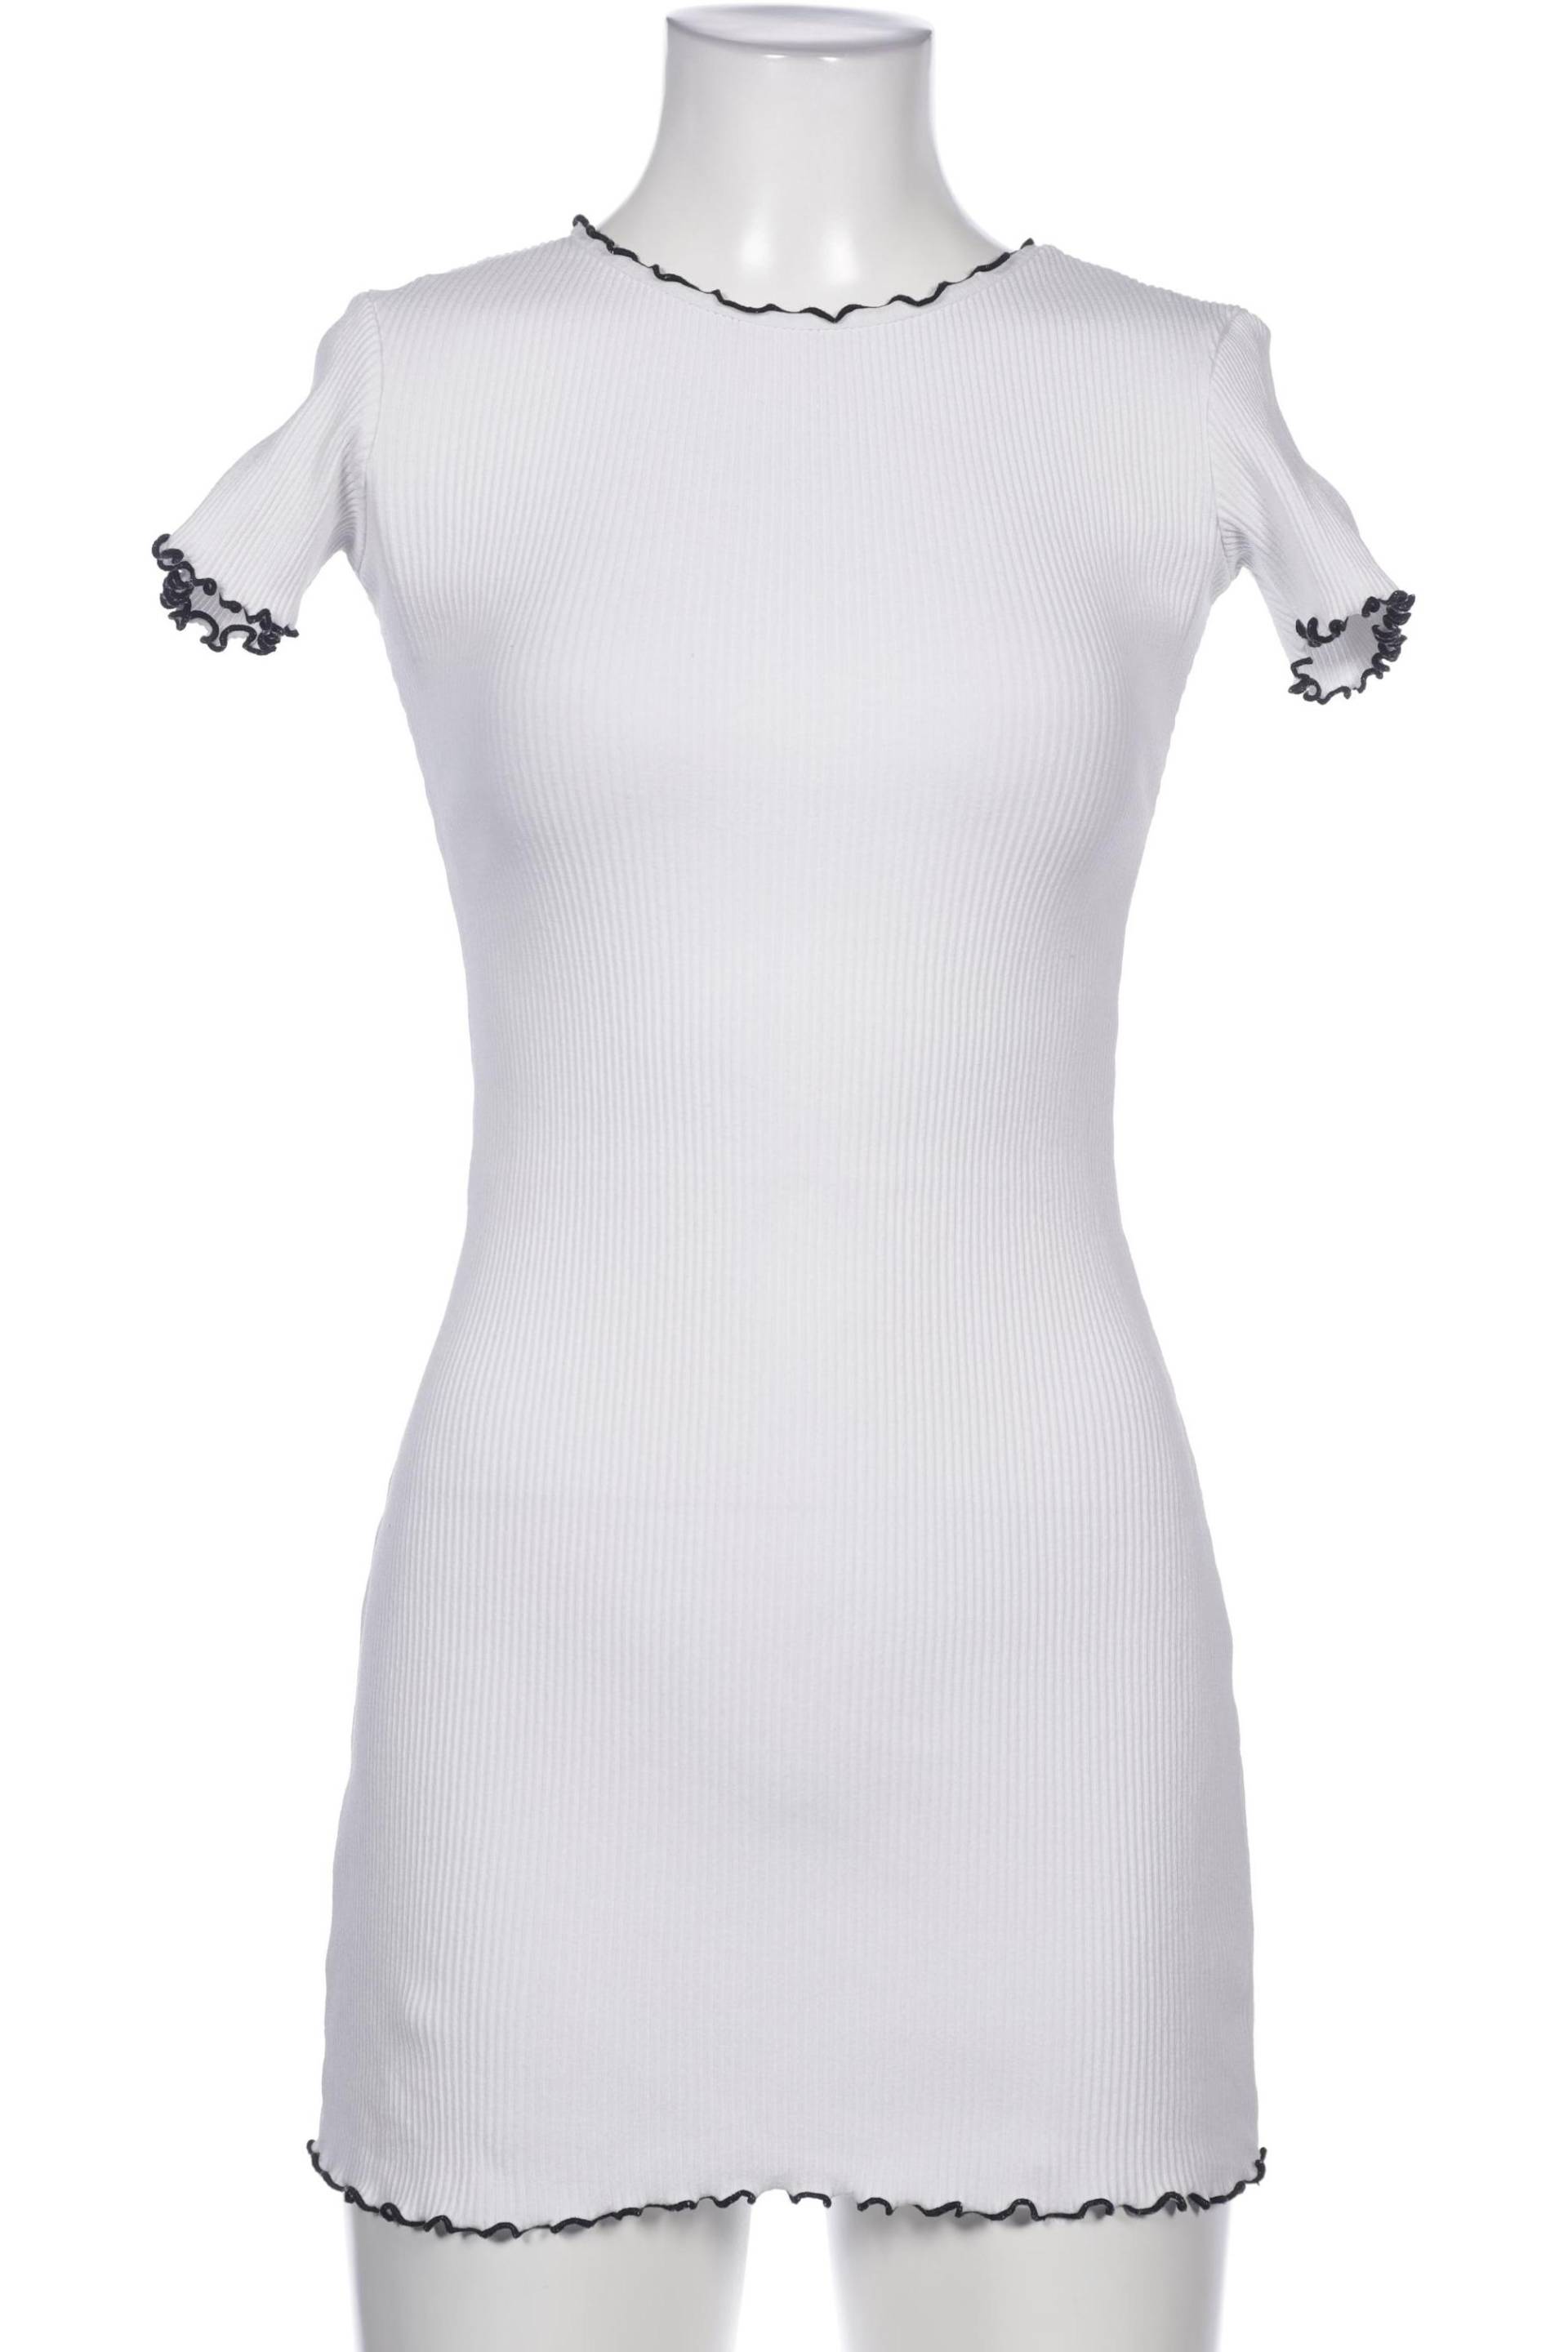 Zara Damen Kleid, weiß, Gr. 36 von ZARA